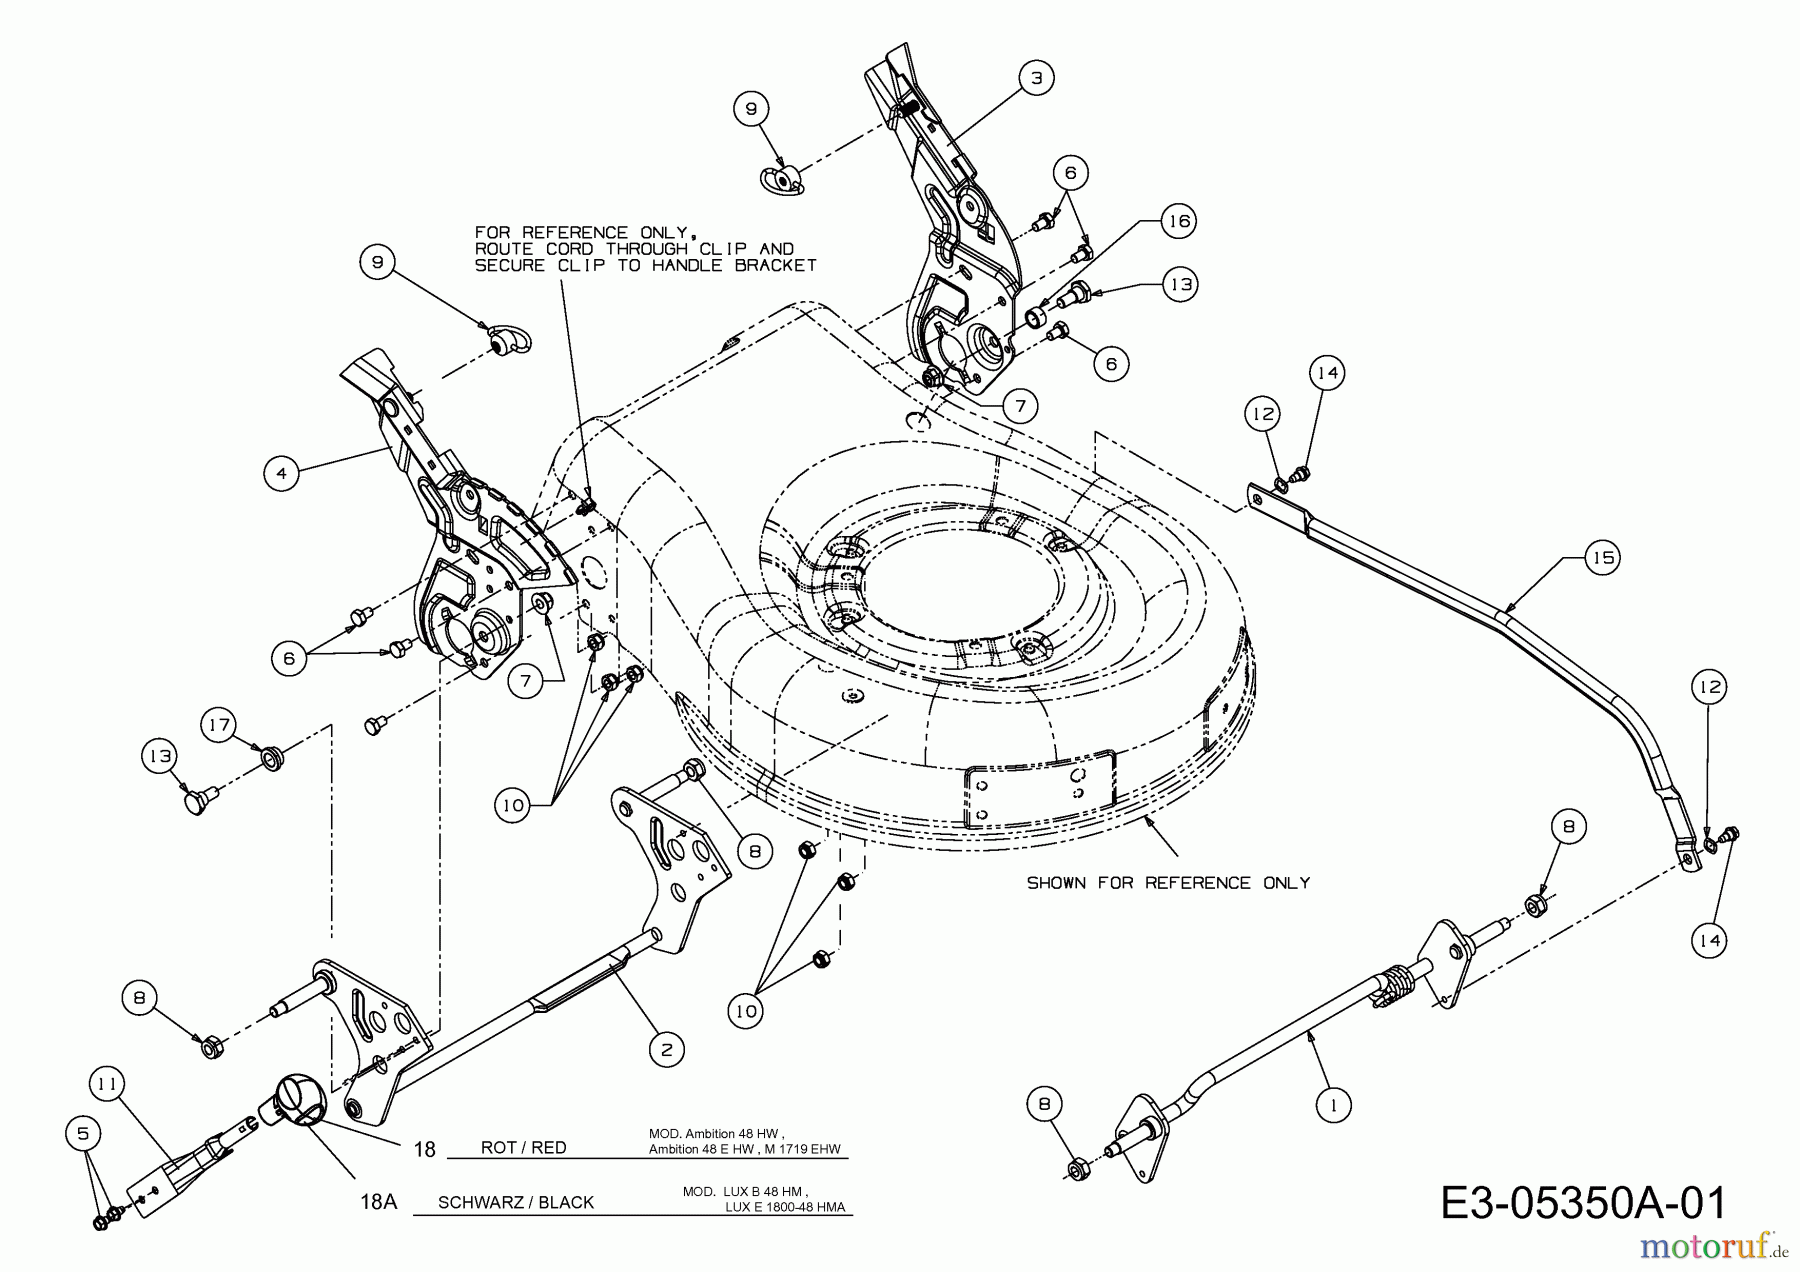  Lux Tools Motormäher B 48 HM 11C-128R694  (2012) Höhenverstellung